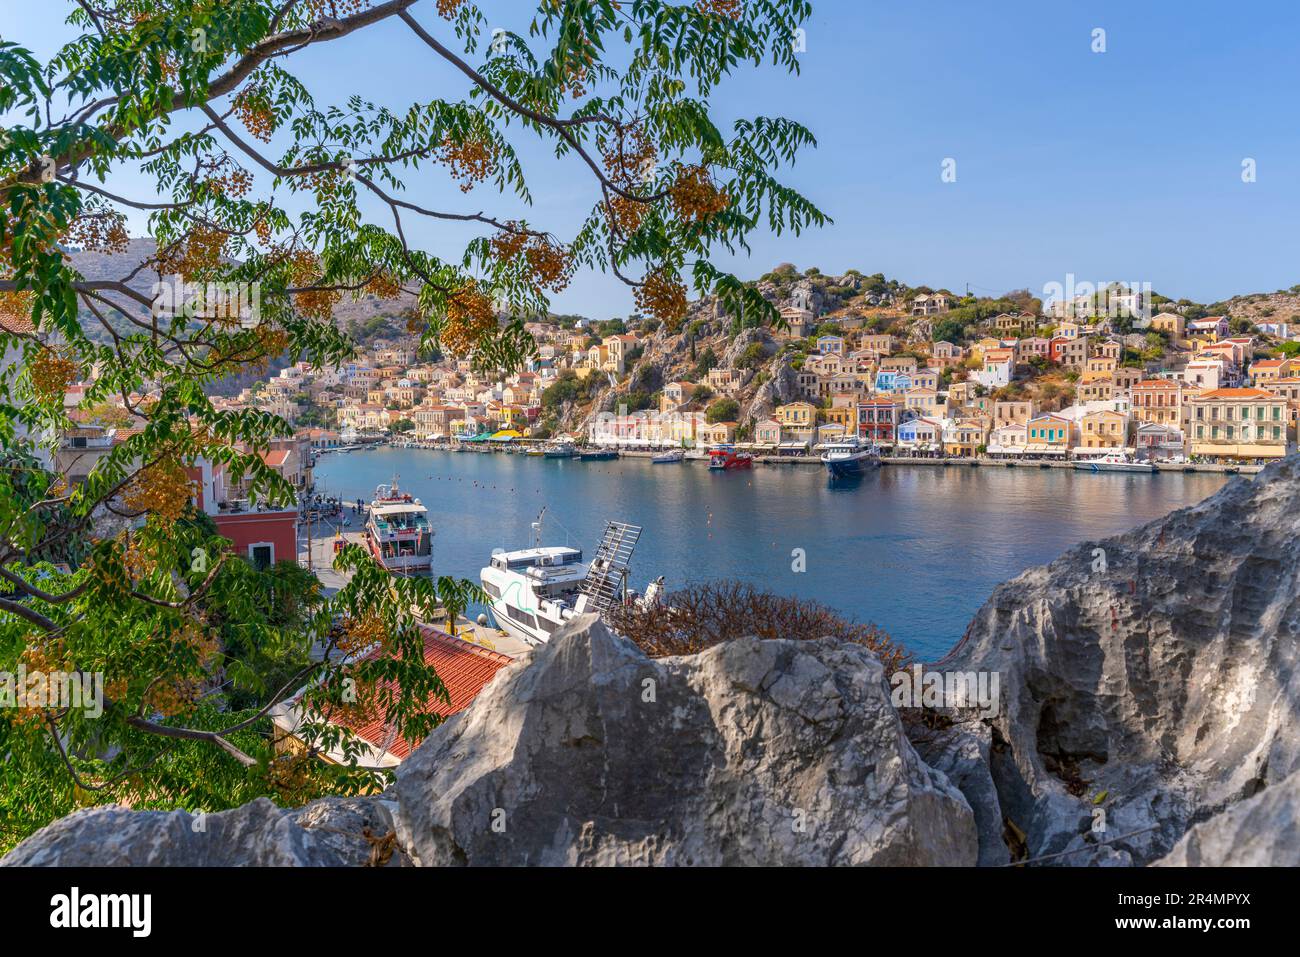 Vue sur le port depuis une position surélevée dans la ville de Symi, l'île de Symi, le Dodécanèse, les îles grecques, la Grèce, Europe Banque D'Images